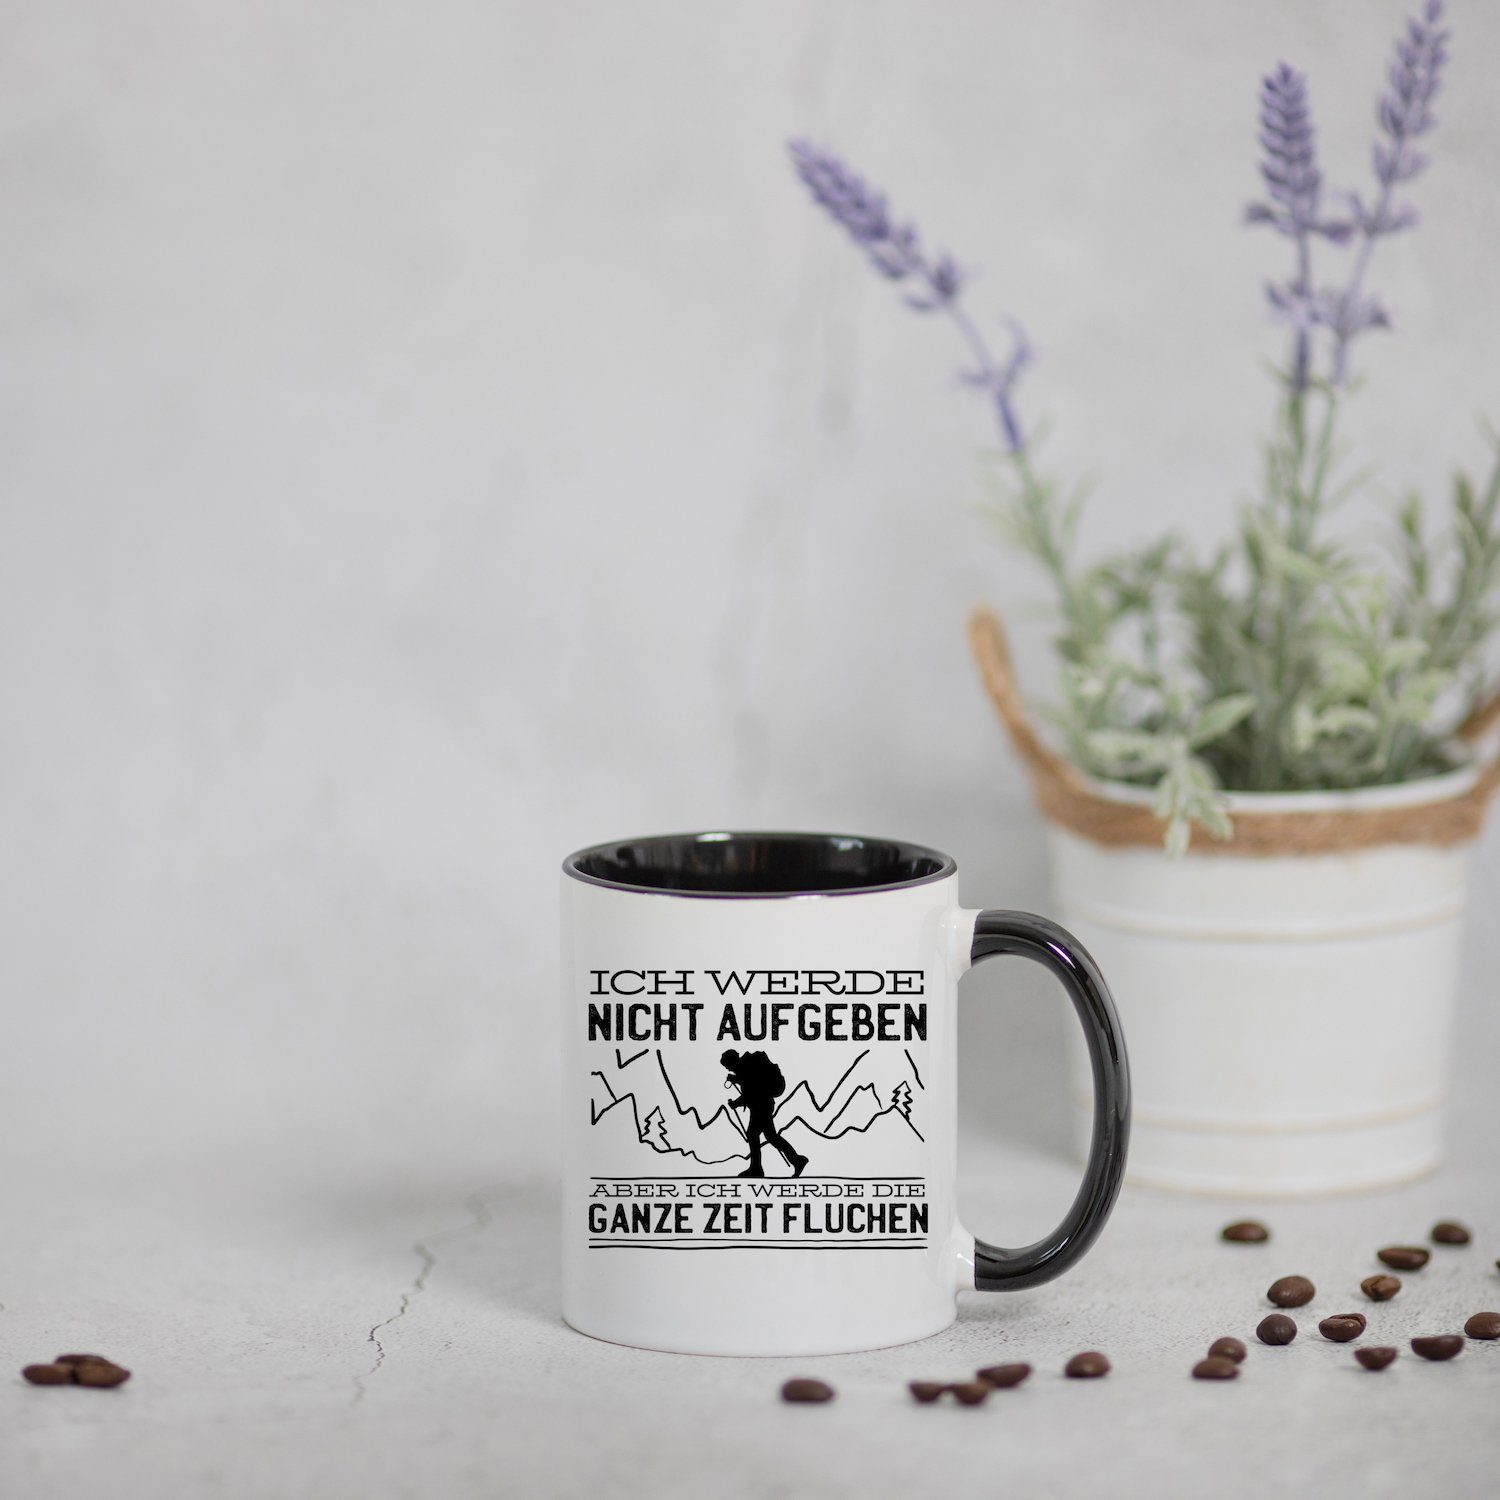 Youth Designz Tasse Keramik, Weiss/Schwarz Kaffeetasse Aufgeben mit Print Wandern Geschenk, Nicht trendigem